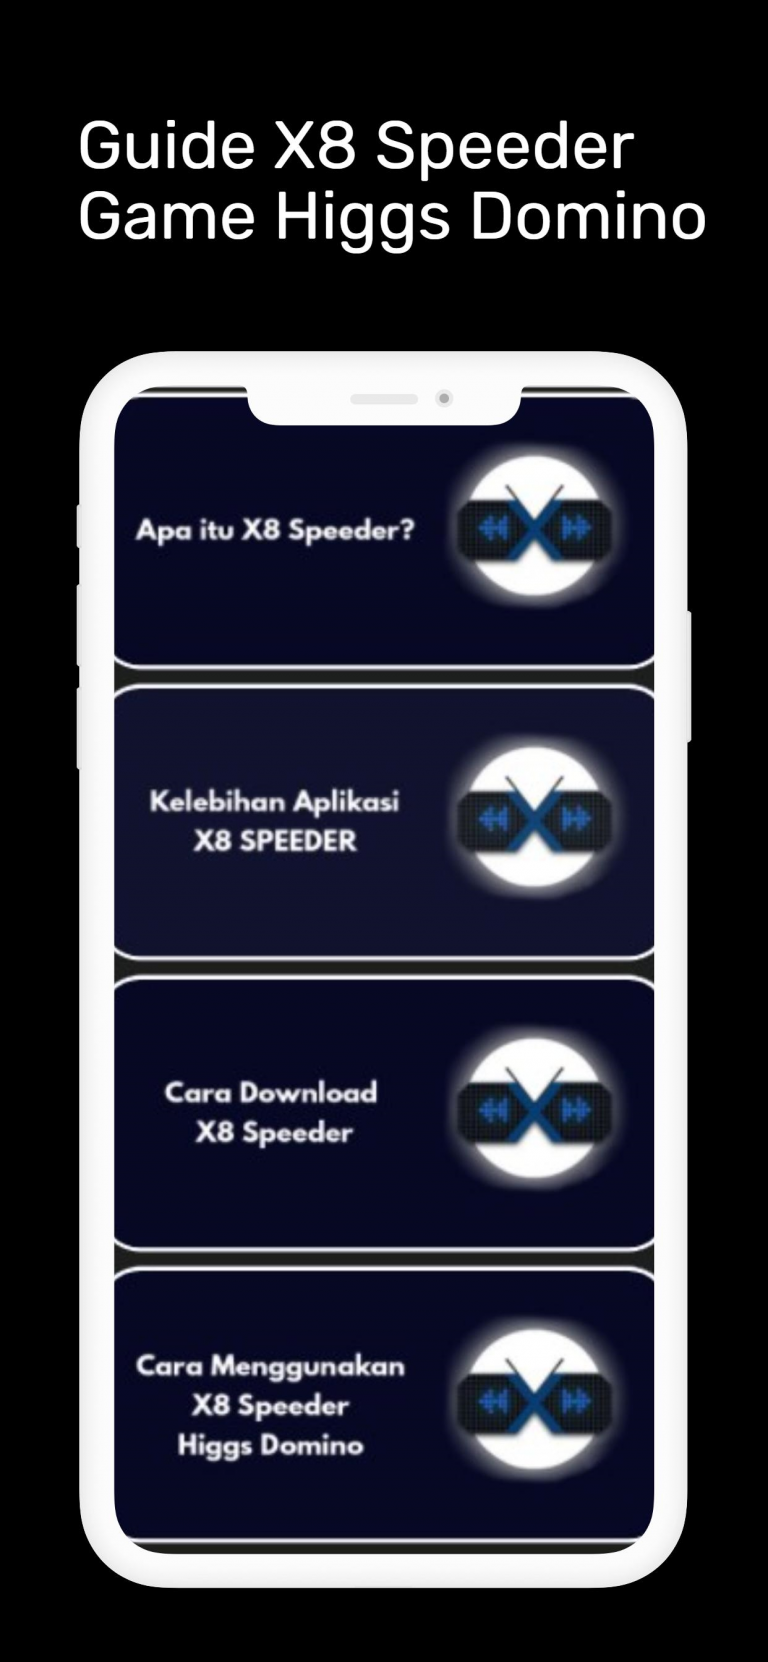 download x8 speeder mod apk higgs domnio and enjoy.